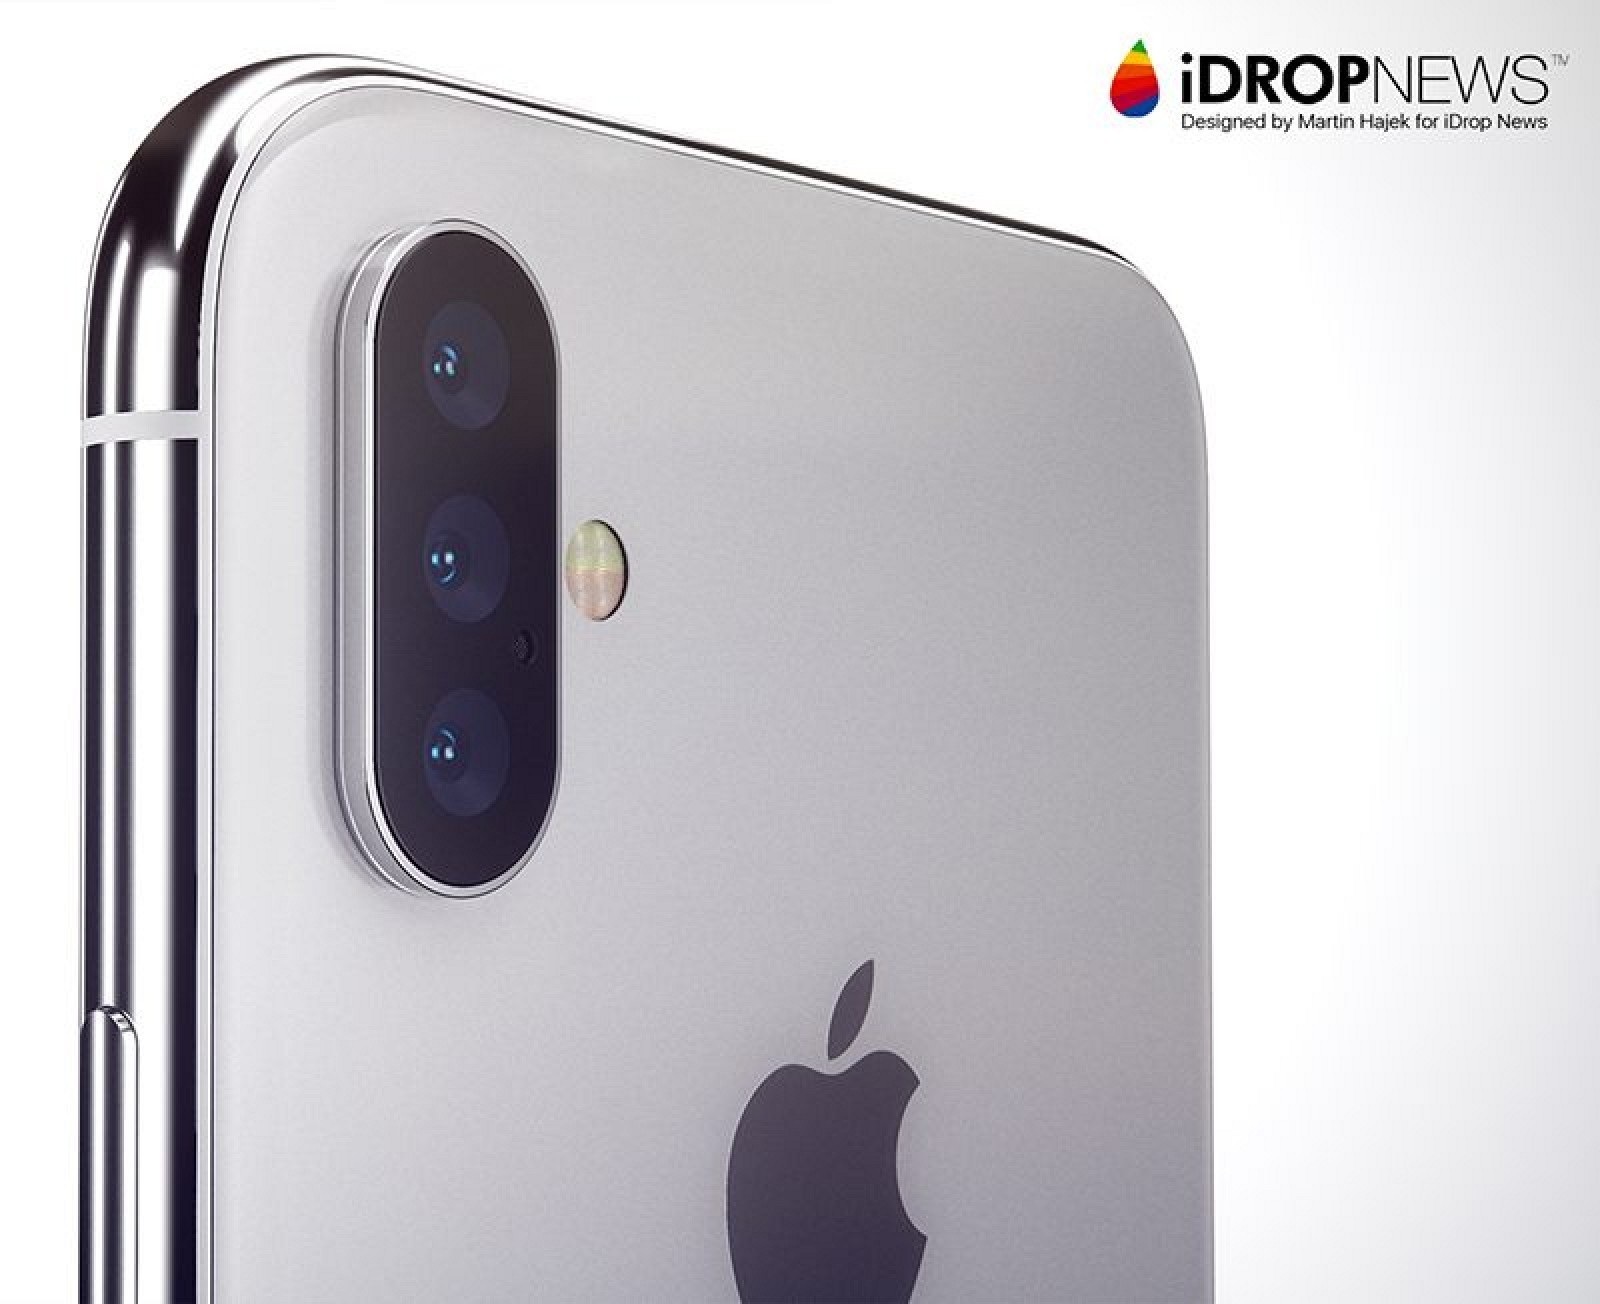 Thêm thông tin khẳng định iPhone 2019 sẽ có 3 camera, kích thước lớn hơn